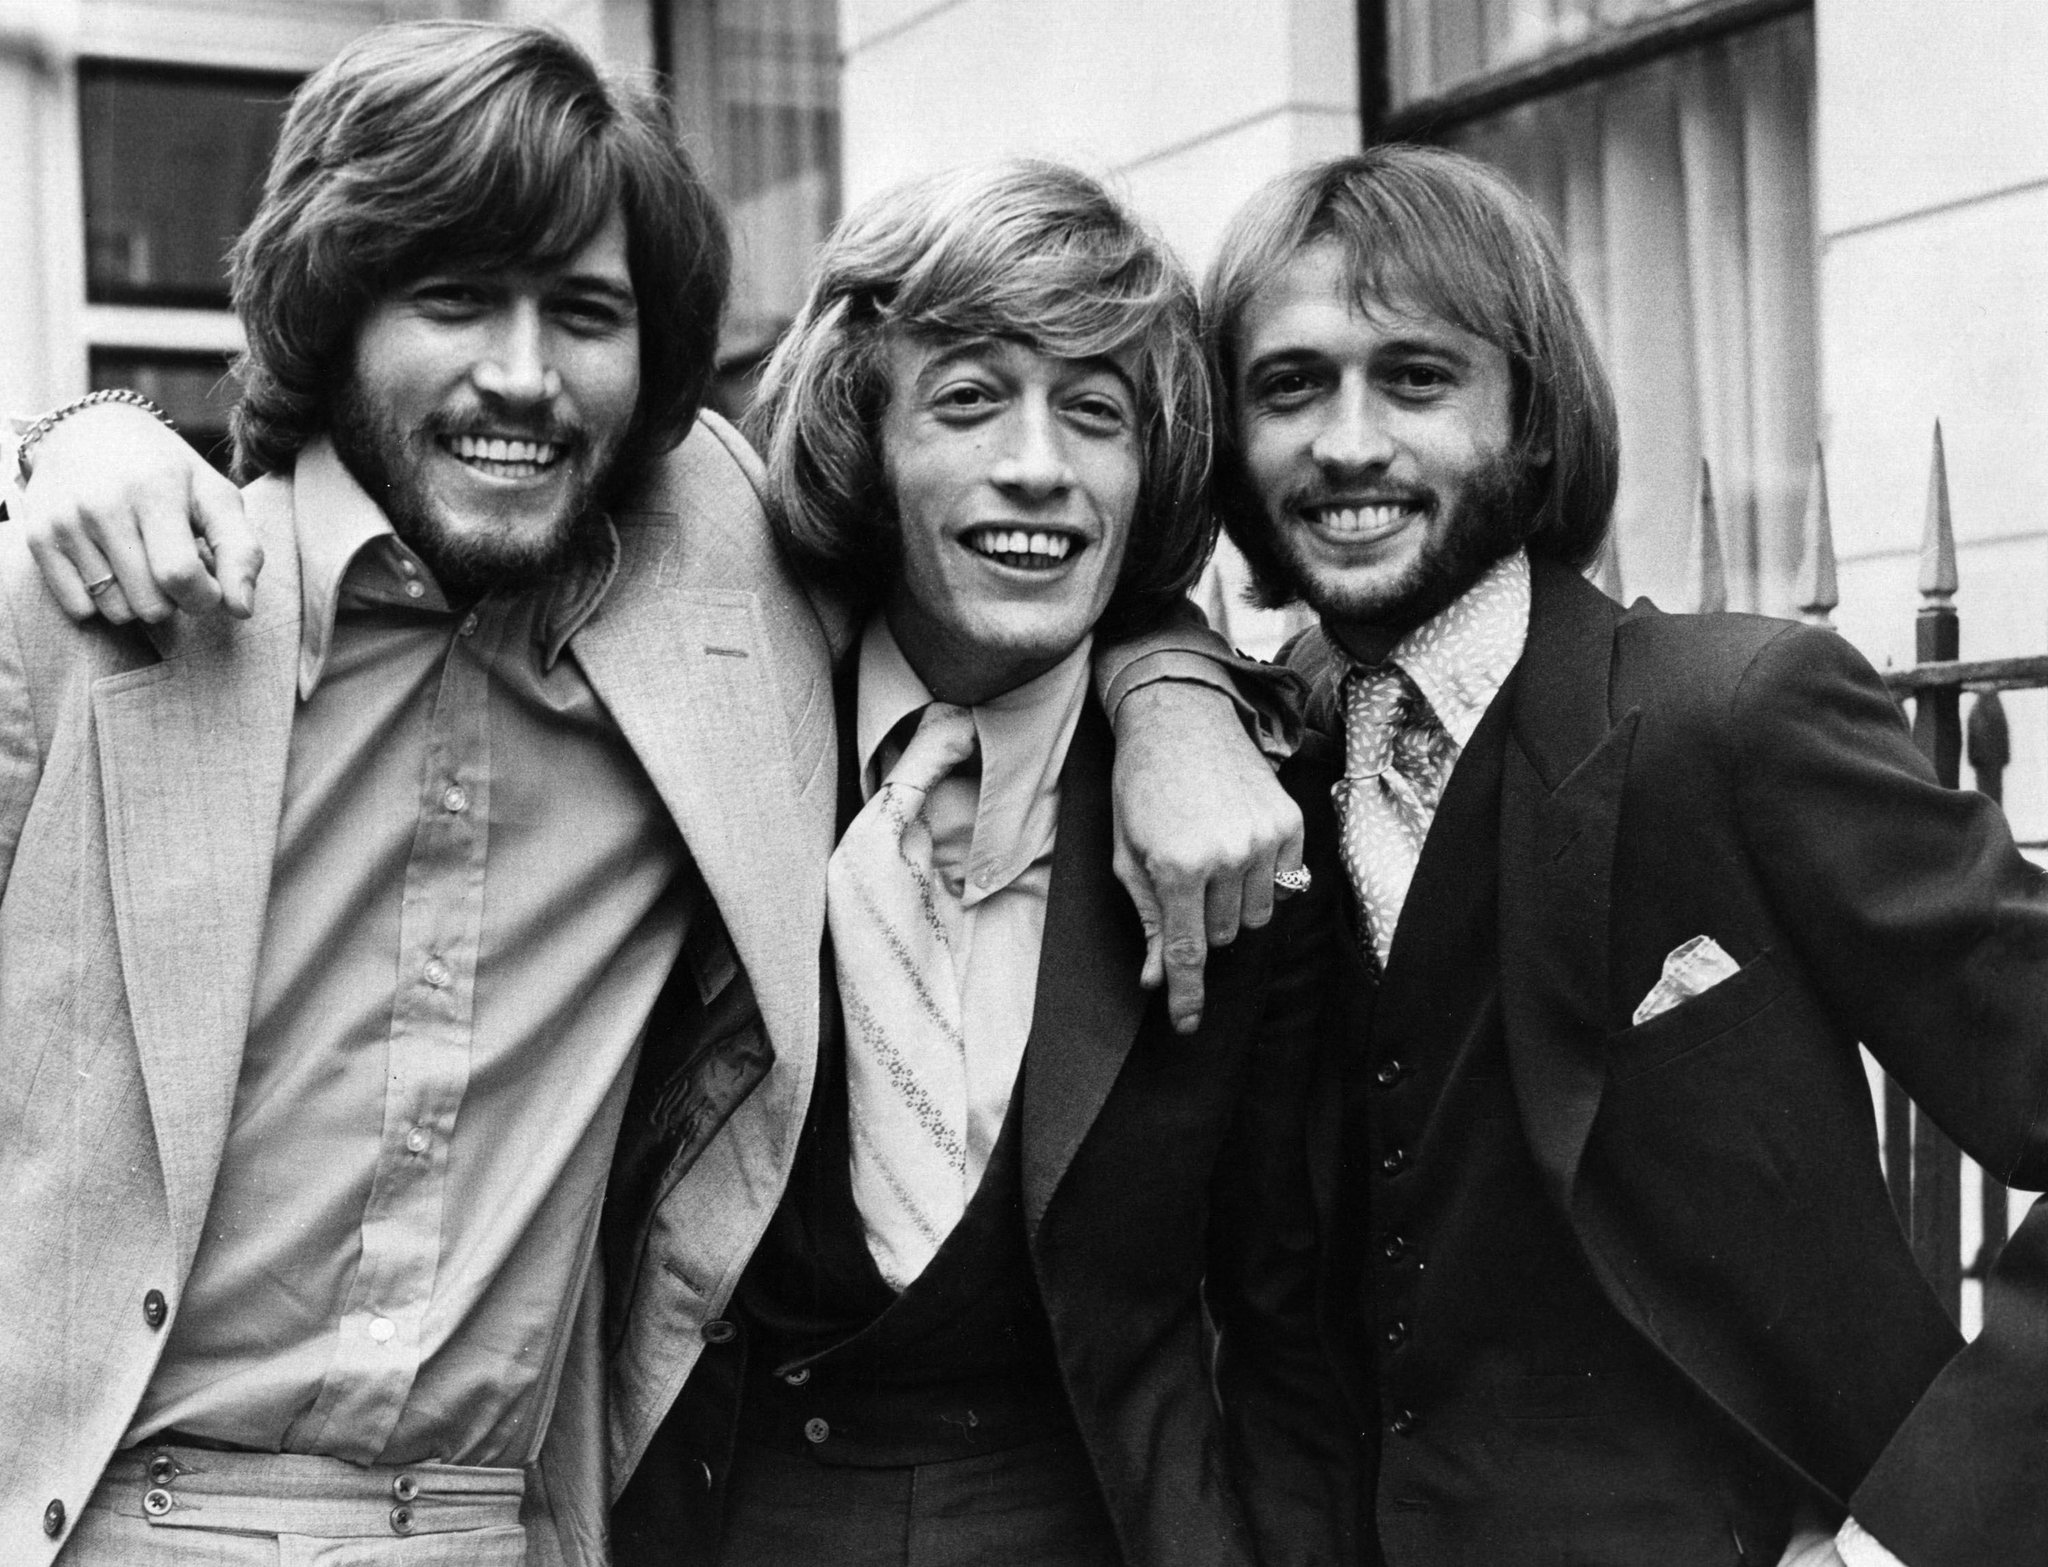 Bee Gees circa 1970